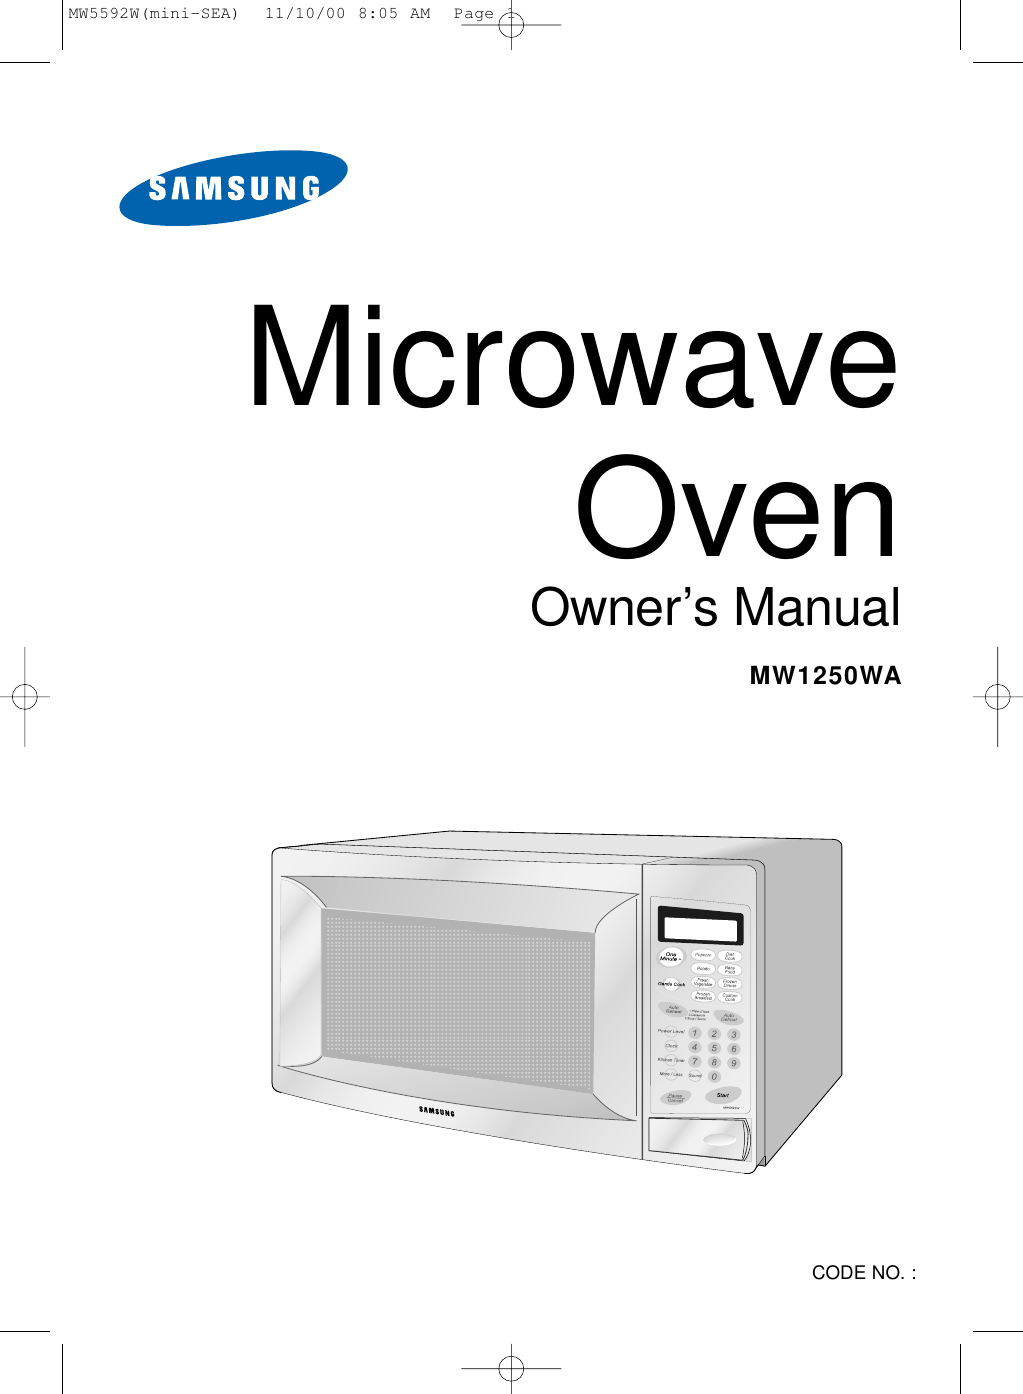 Microwave OvenOwner’s ManualMW1250WACODE NO. : MW5592W(mini-SEA)  11/10/00 8:05 AM  Page 1